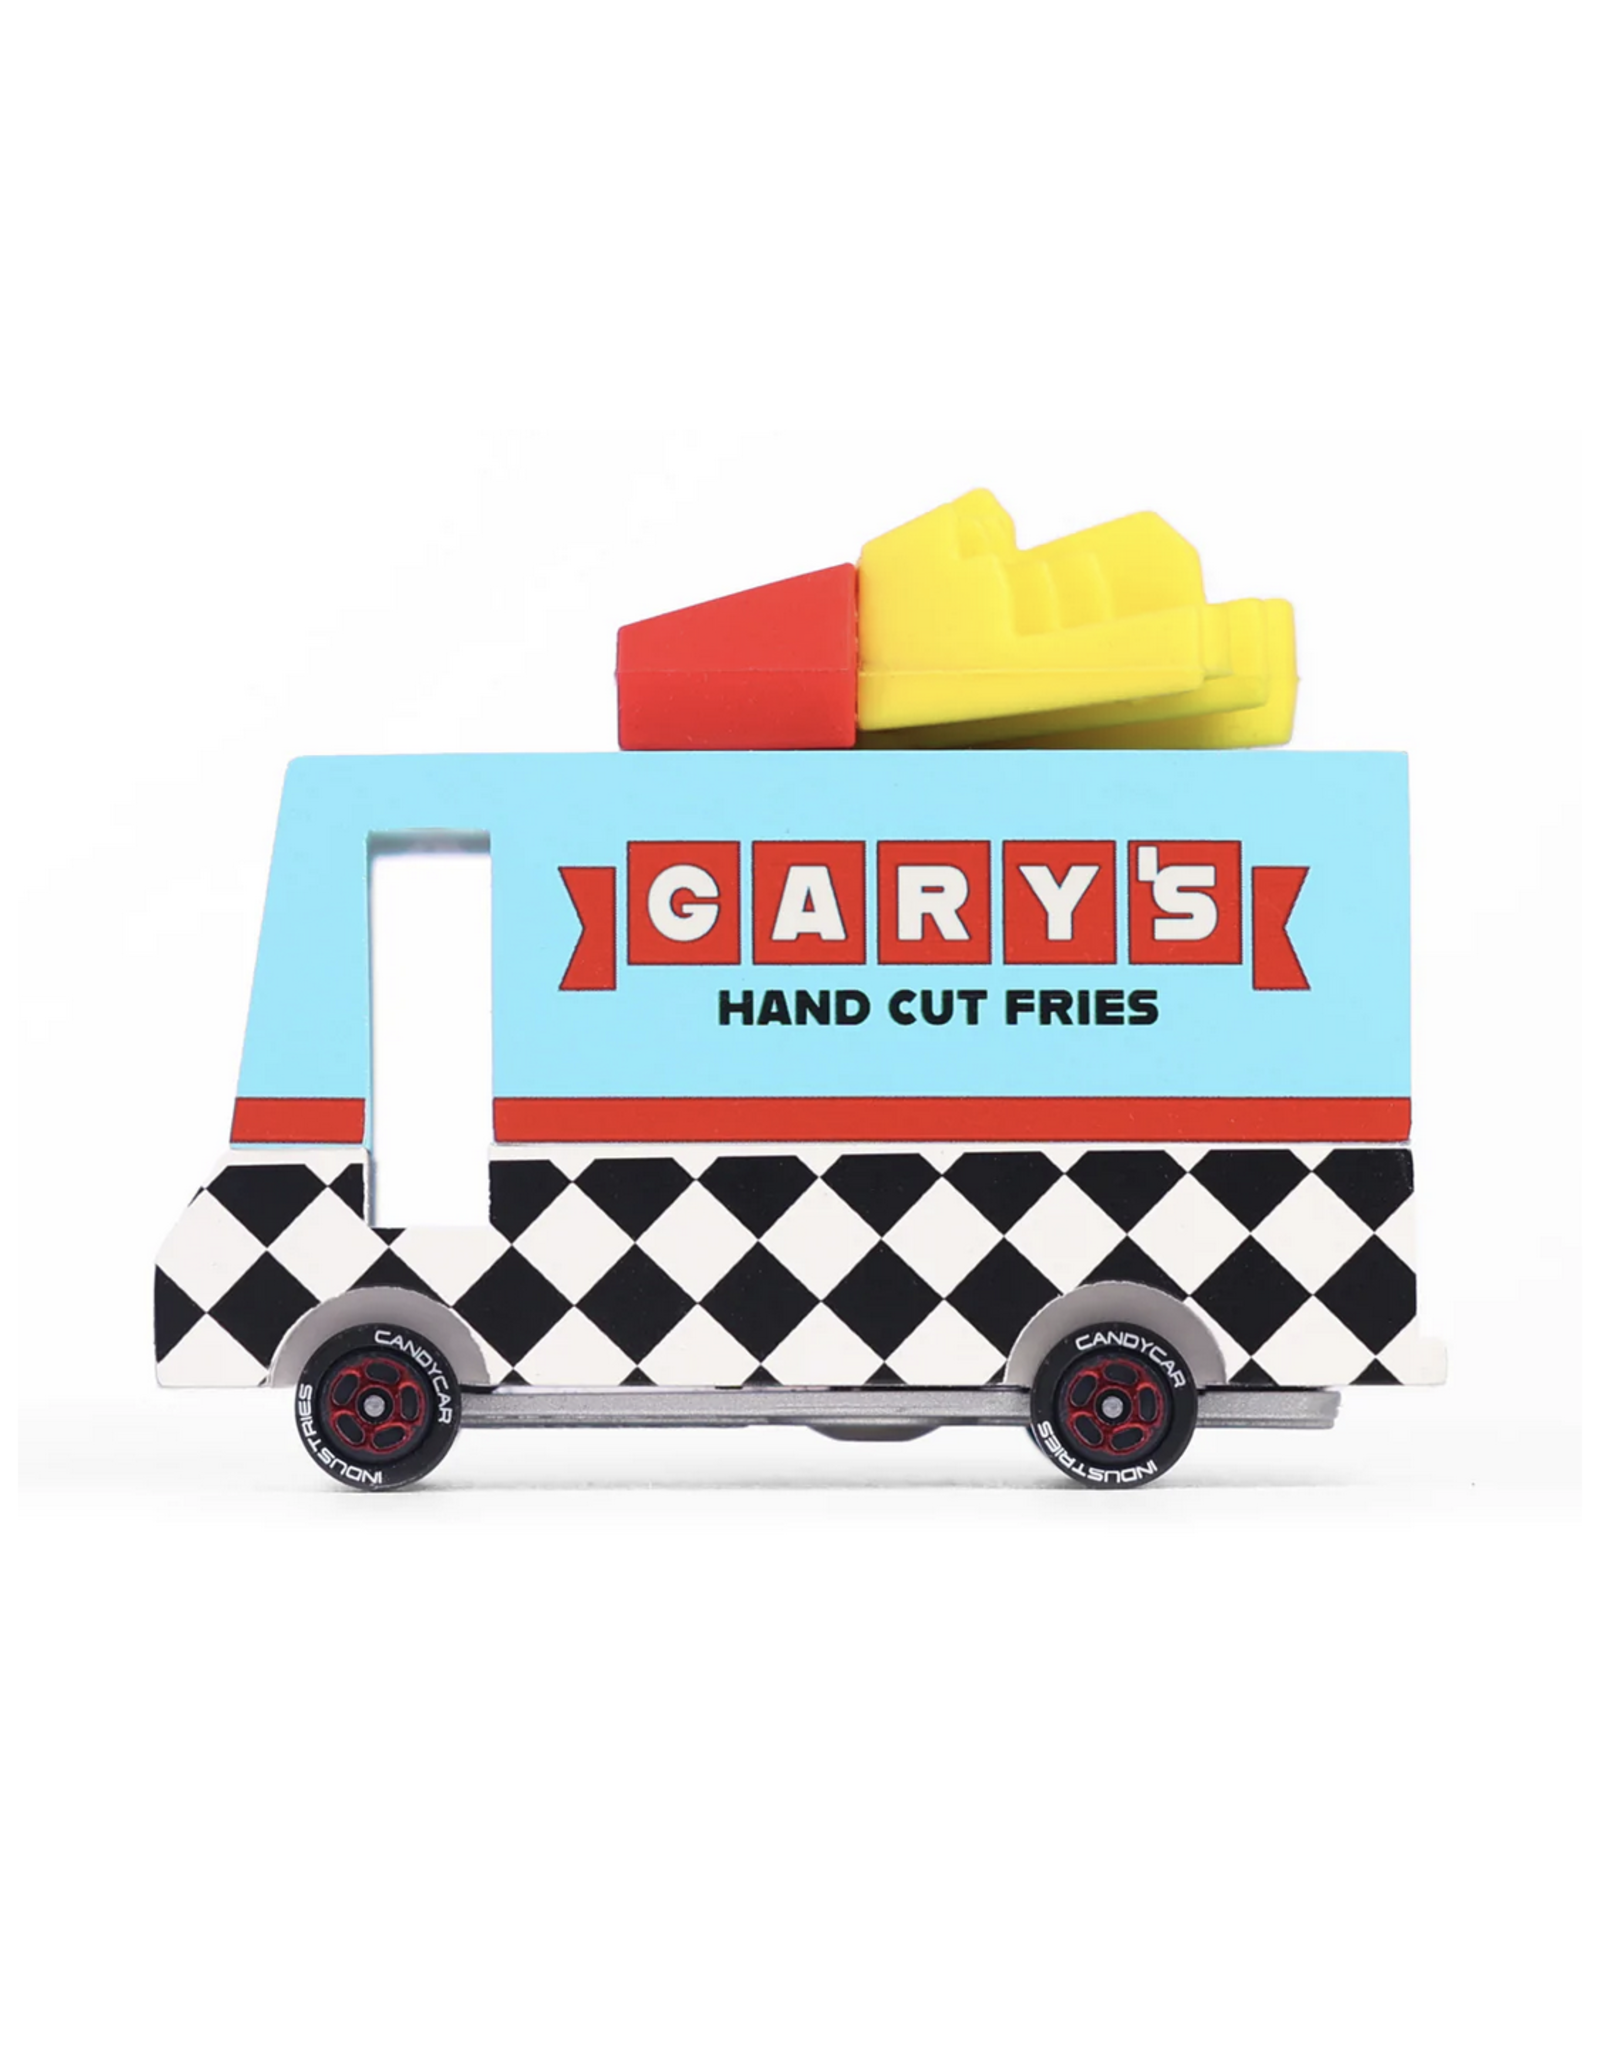 Garry's French Fry Van*